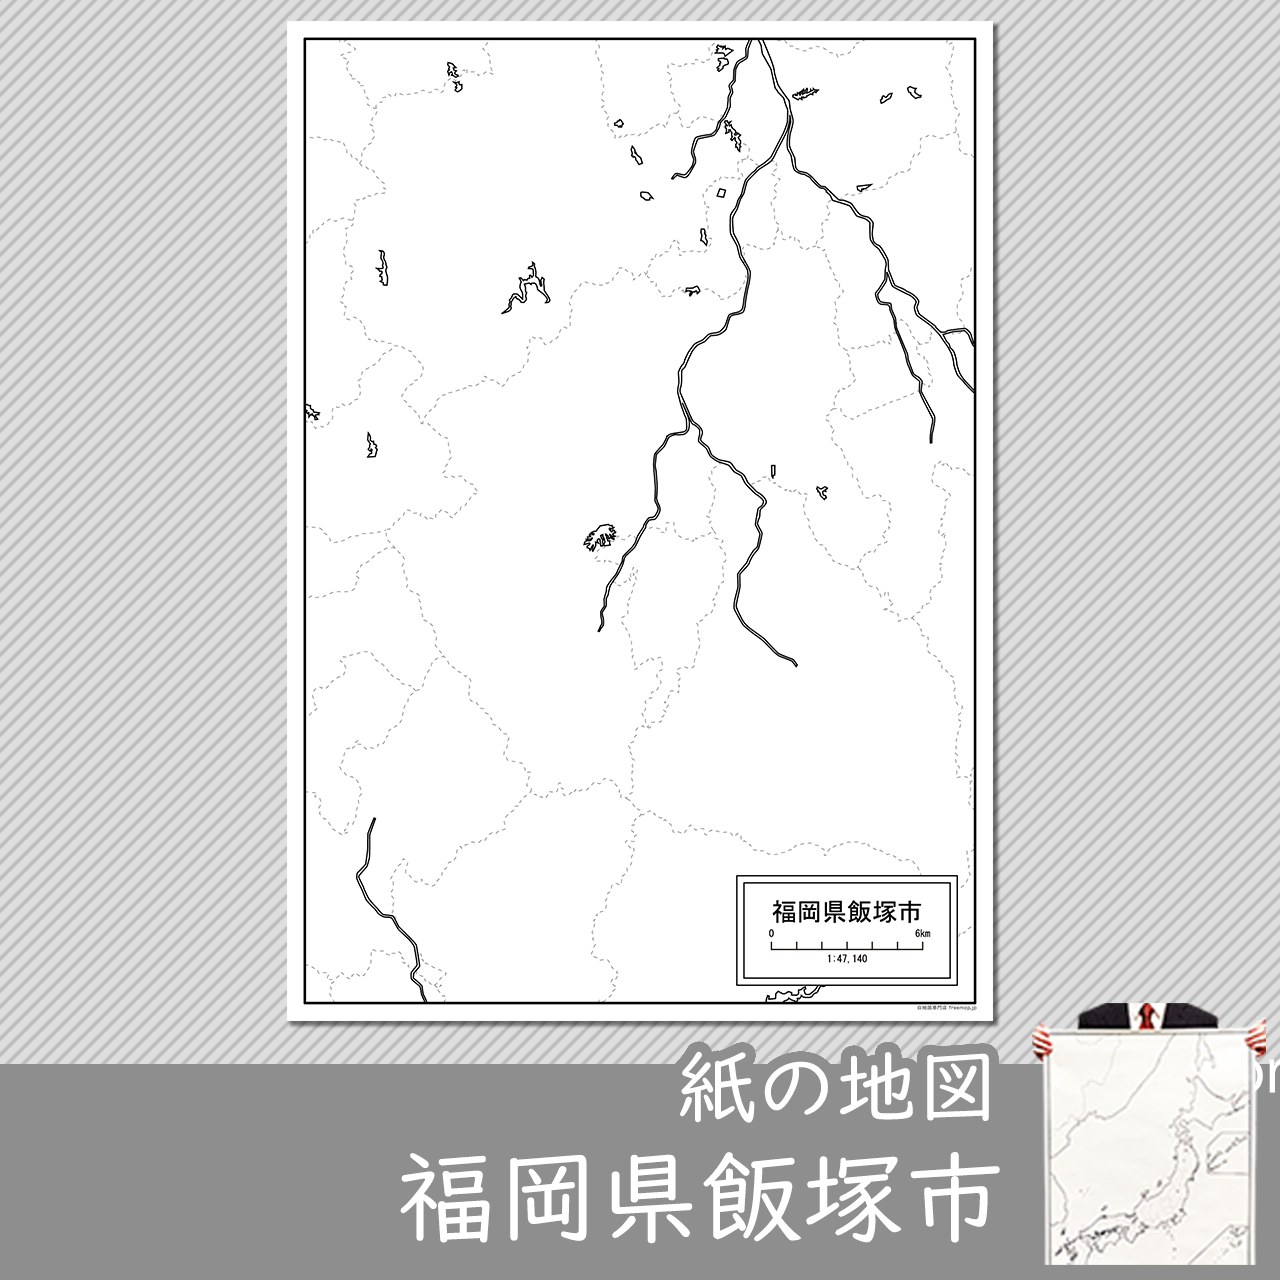 飯塚市の紙の白地図のサムネイル